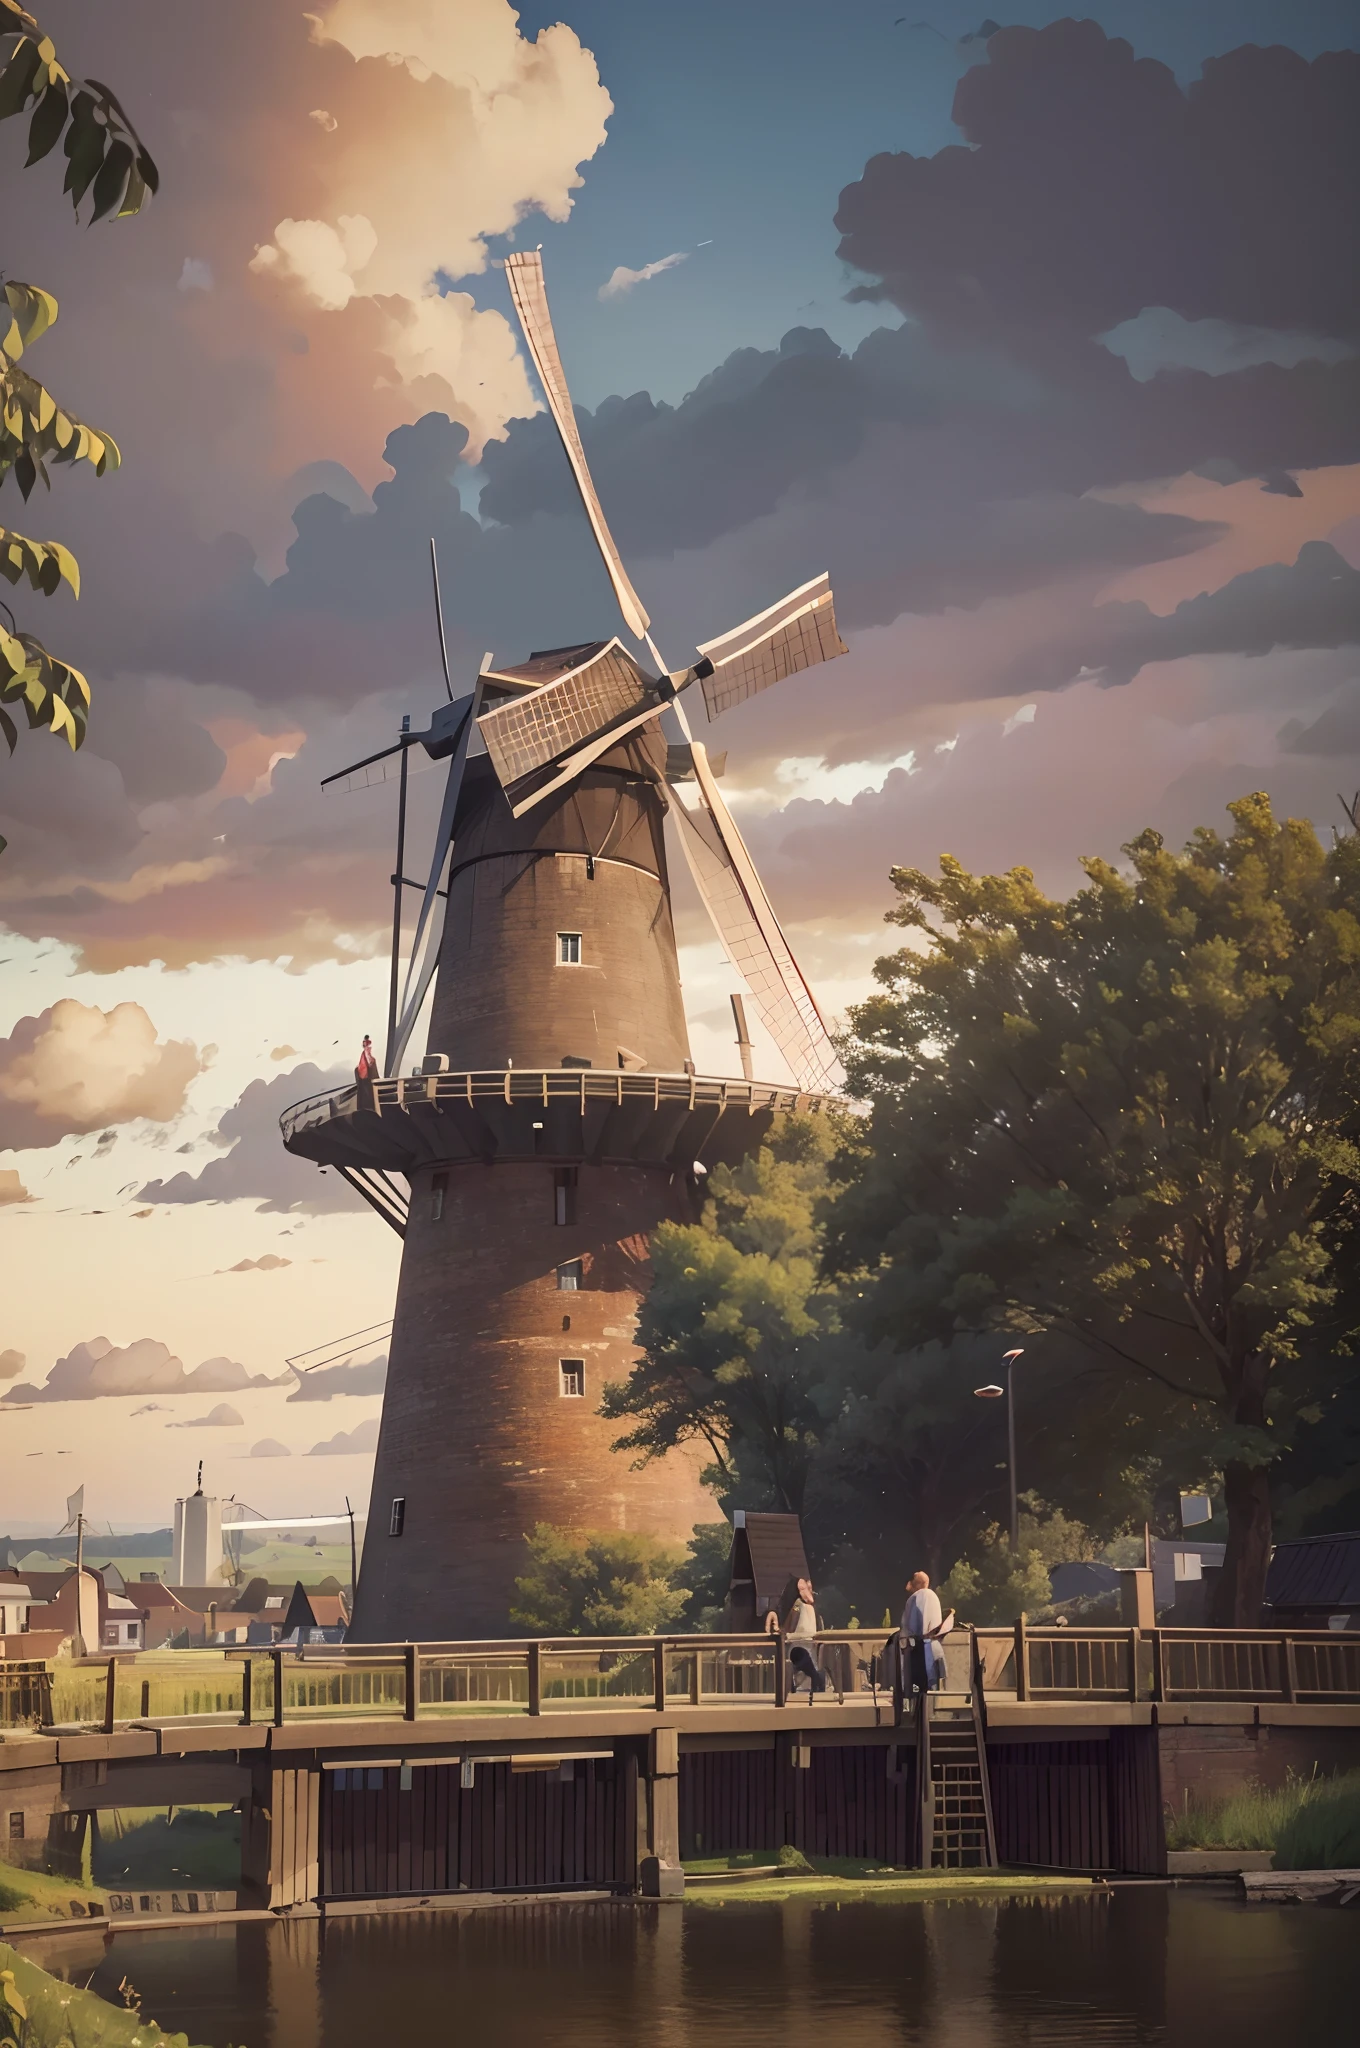 北方, 世界上最高的风车, 翱翔在荷兰的风景上空. 其巨大的木质叶片在风景如画的乡村背景下优雅地转动, 捕捉荷兰工程和传统的精髓. 辉煌成就, 风力奇迹, 风景秀丽的乡村, 巨大的地位, 历史自豪感, 动漫现实主义, 完美例证